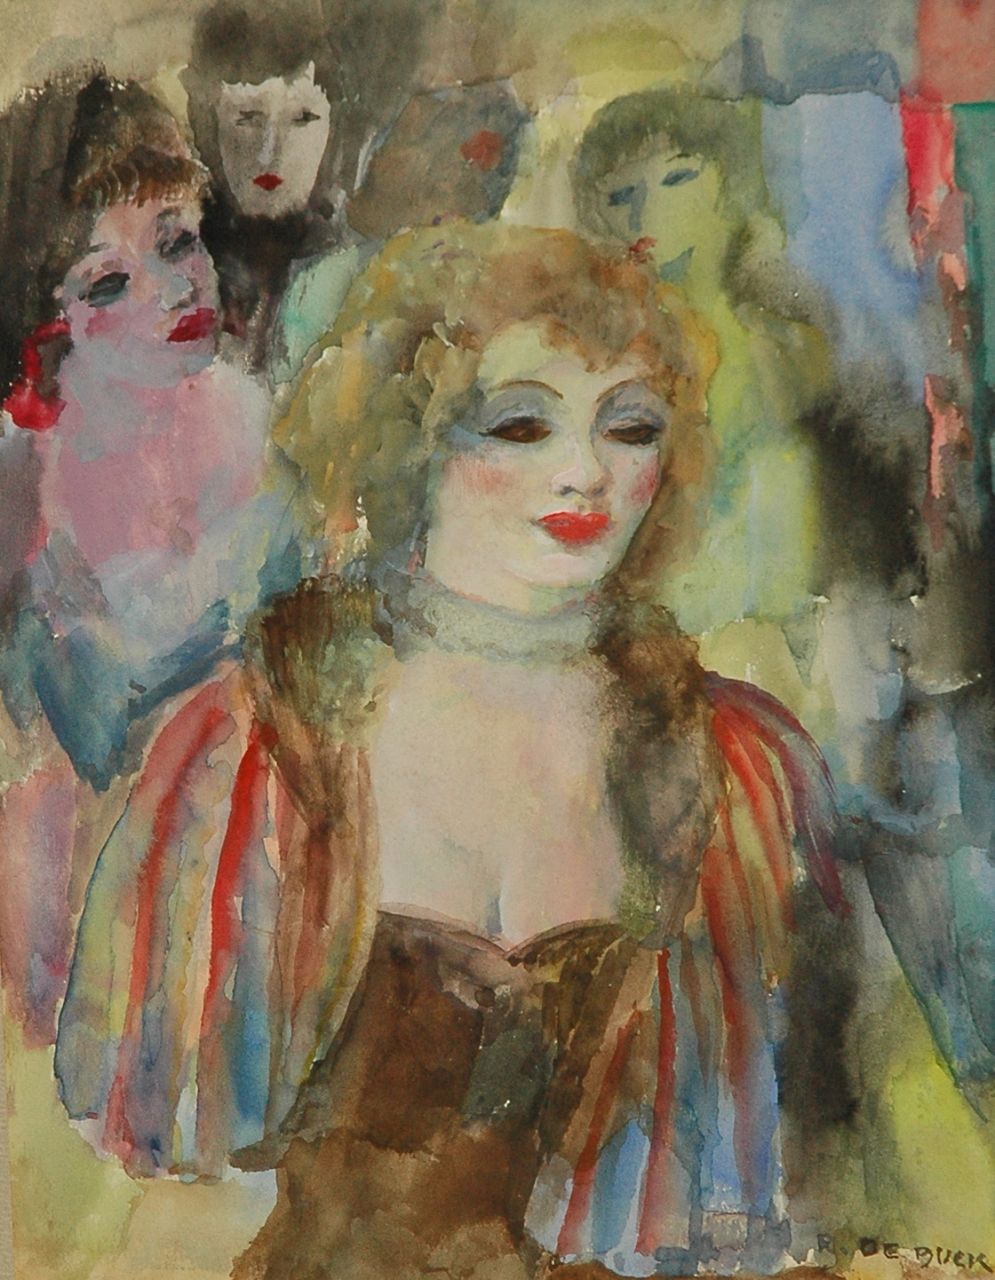 Buck R. de | Raphaël de Buck, Vier vrouwen, aquarel op papier 31,0 x 23,0 cm, gesigneerd rechtsonder